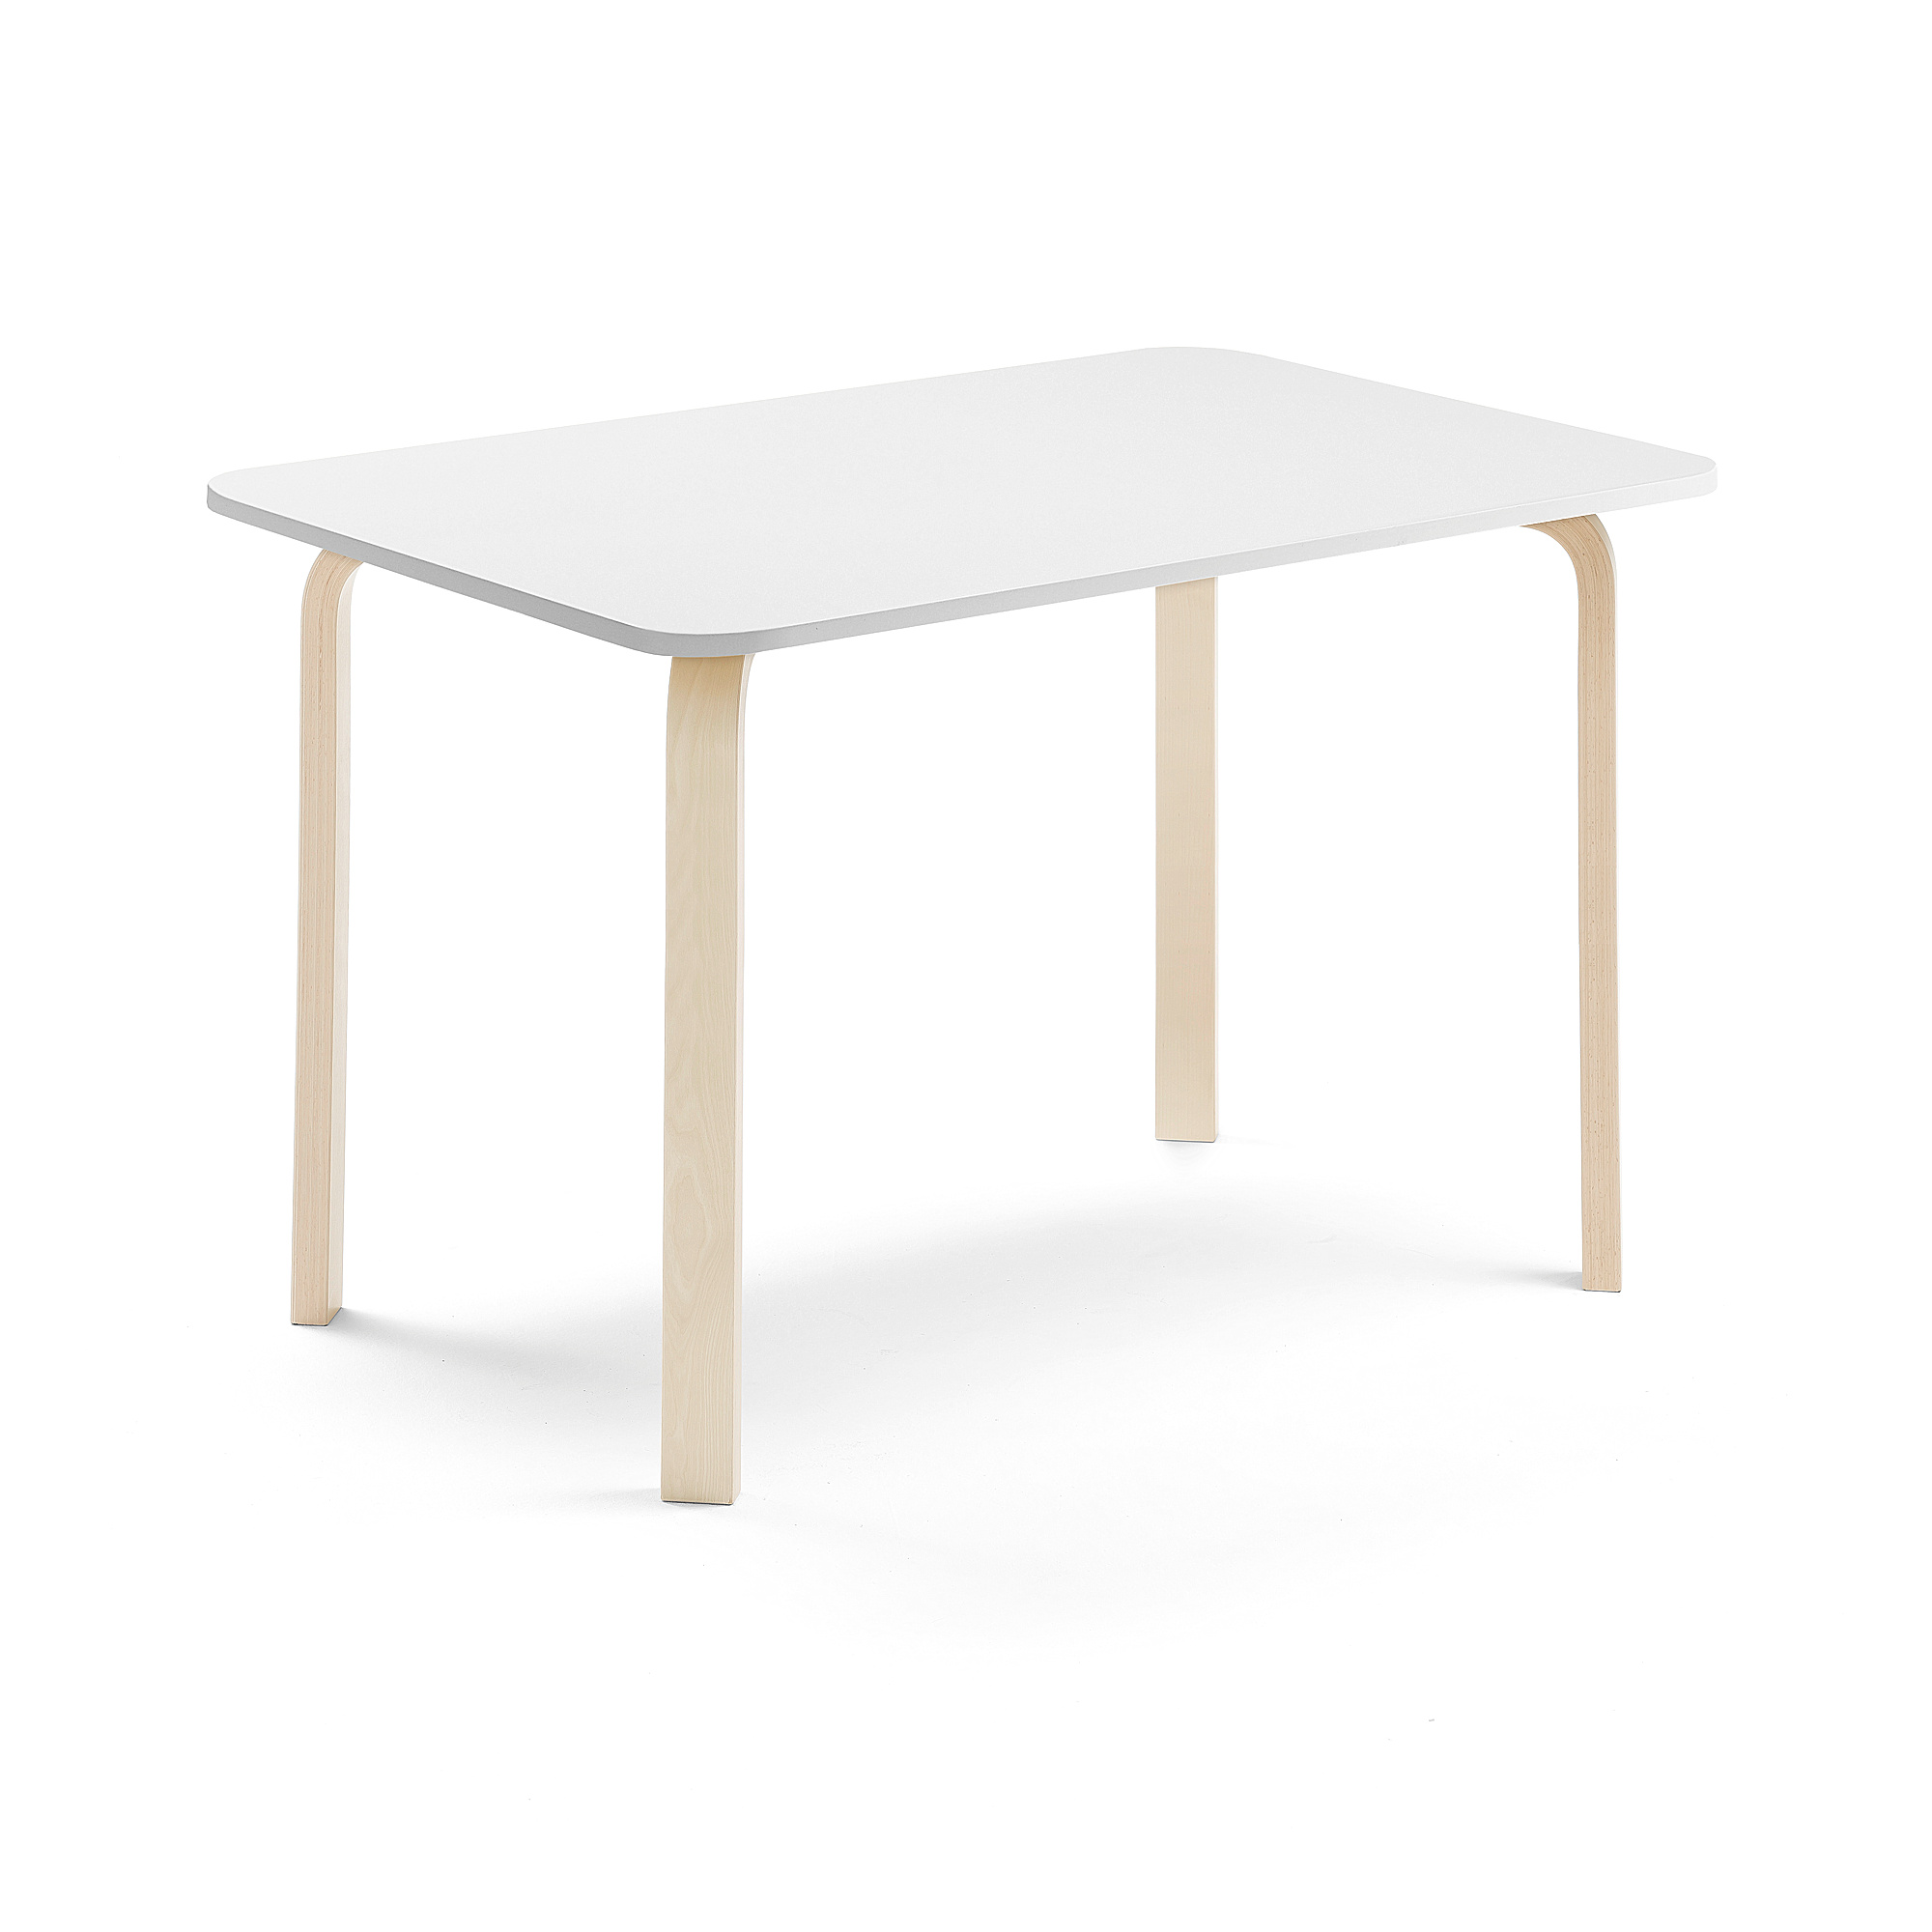 Stůl ELTON, 1200x600x710 mm, bříza, akustická HPL deska, bílá